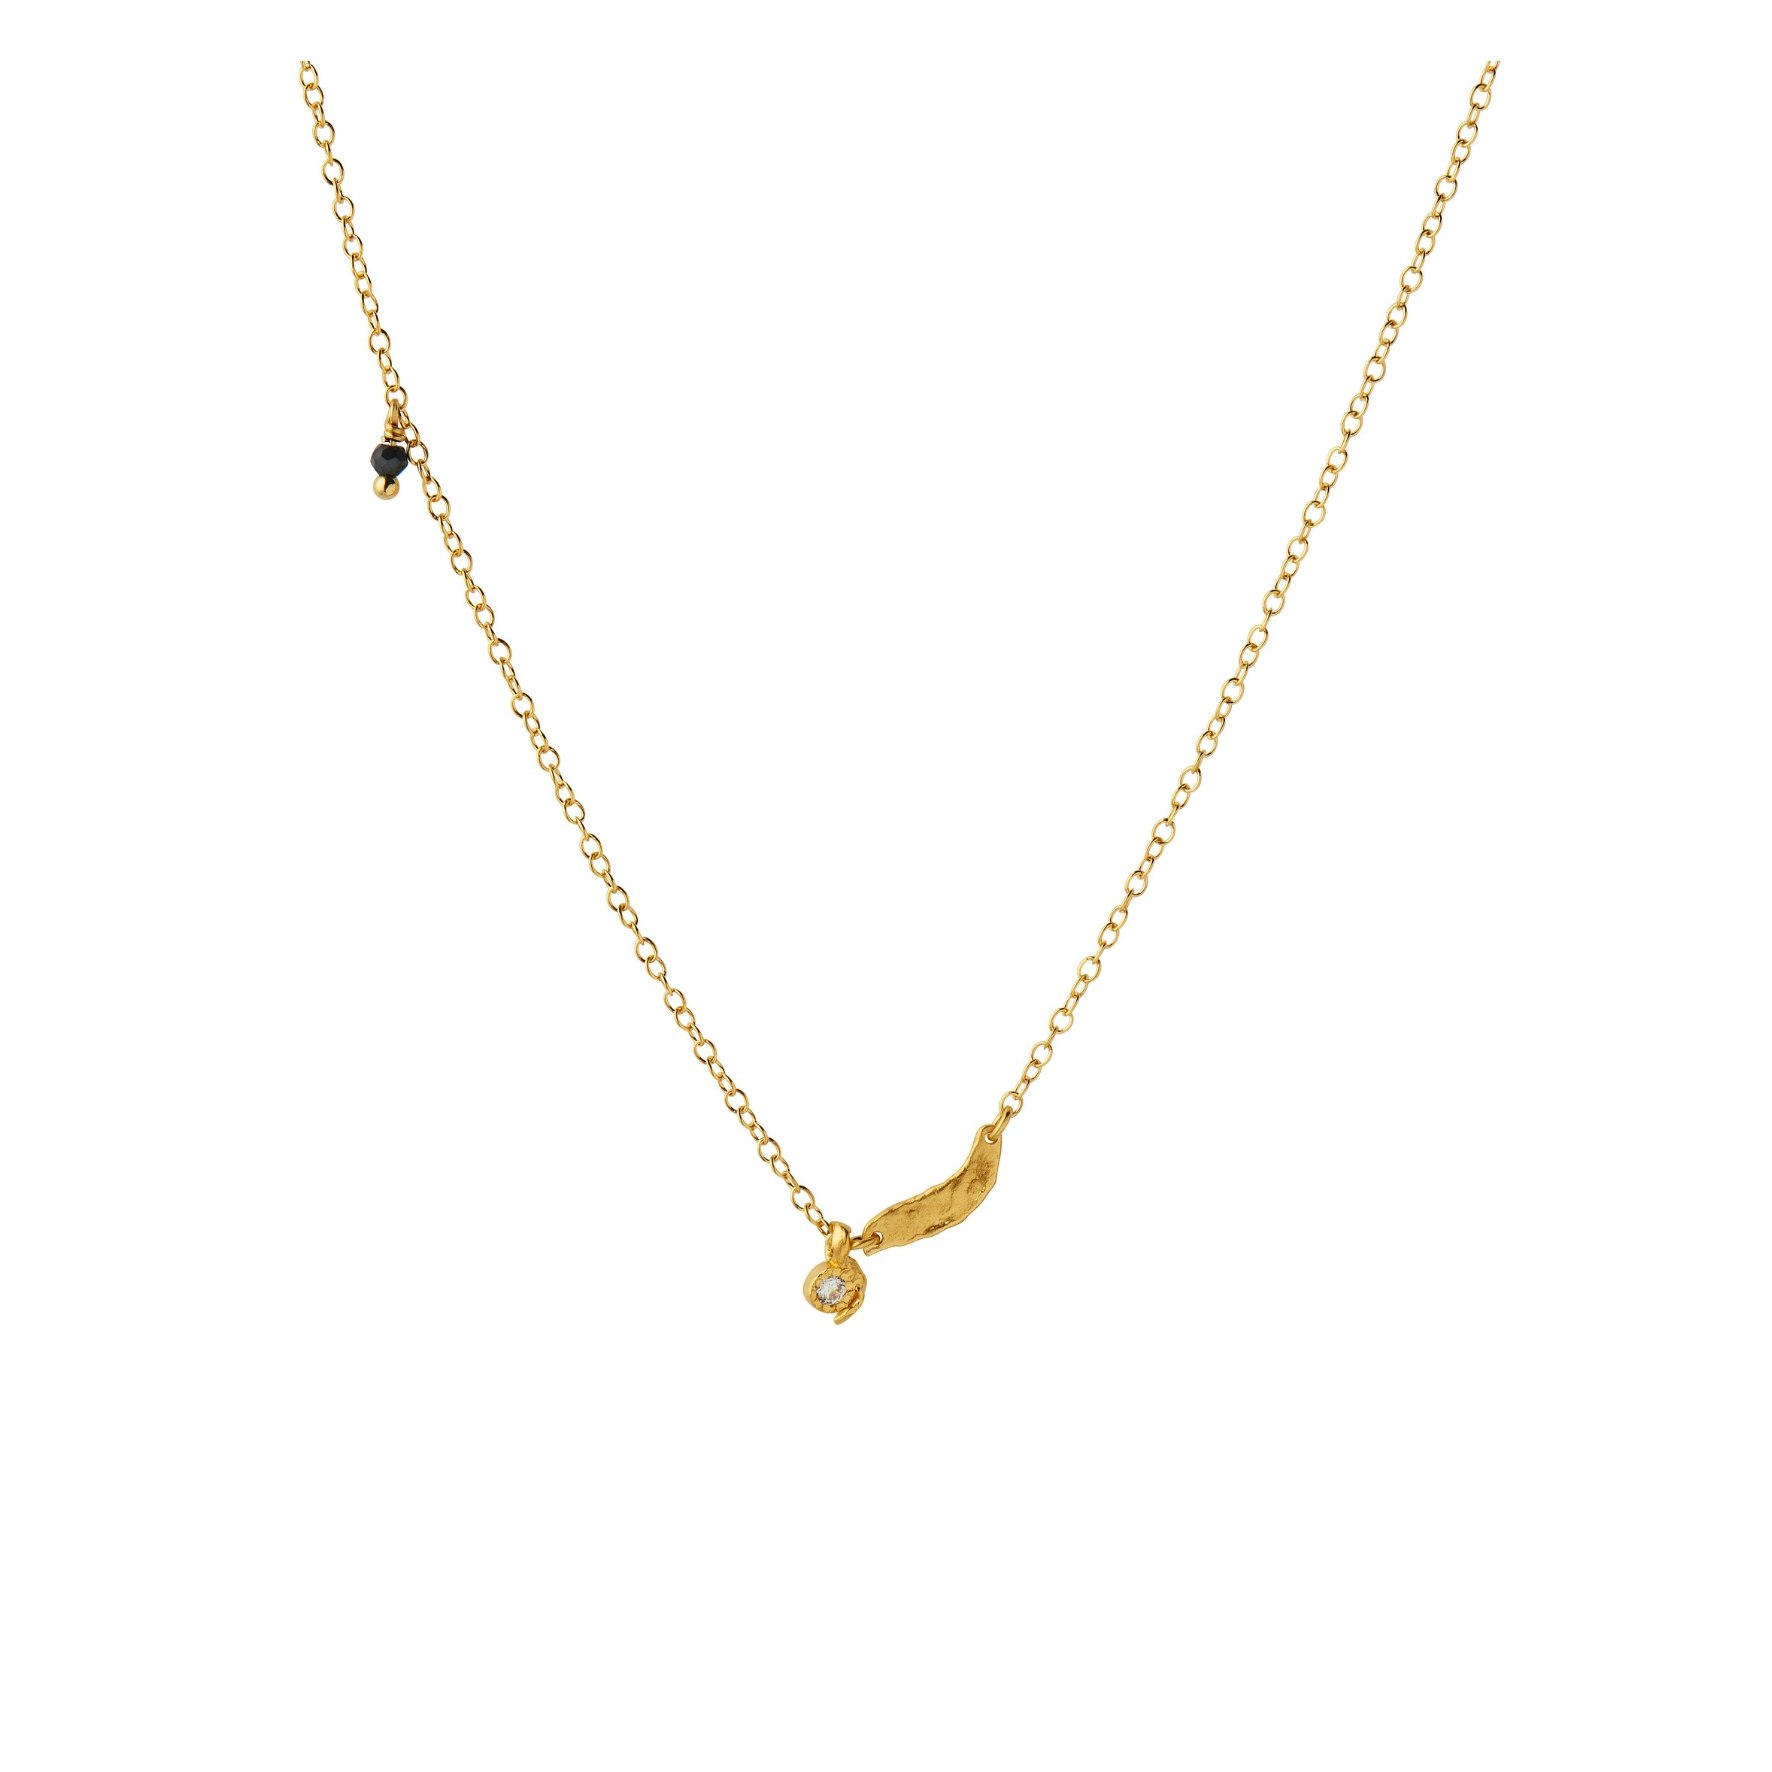 Flow Splash Necklace With Stones von STINE A Jewelry in Vergoldet-Silber Sterling 925